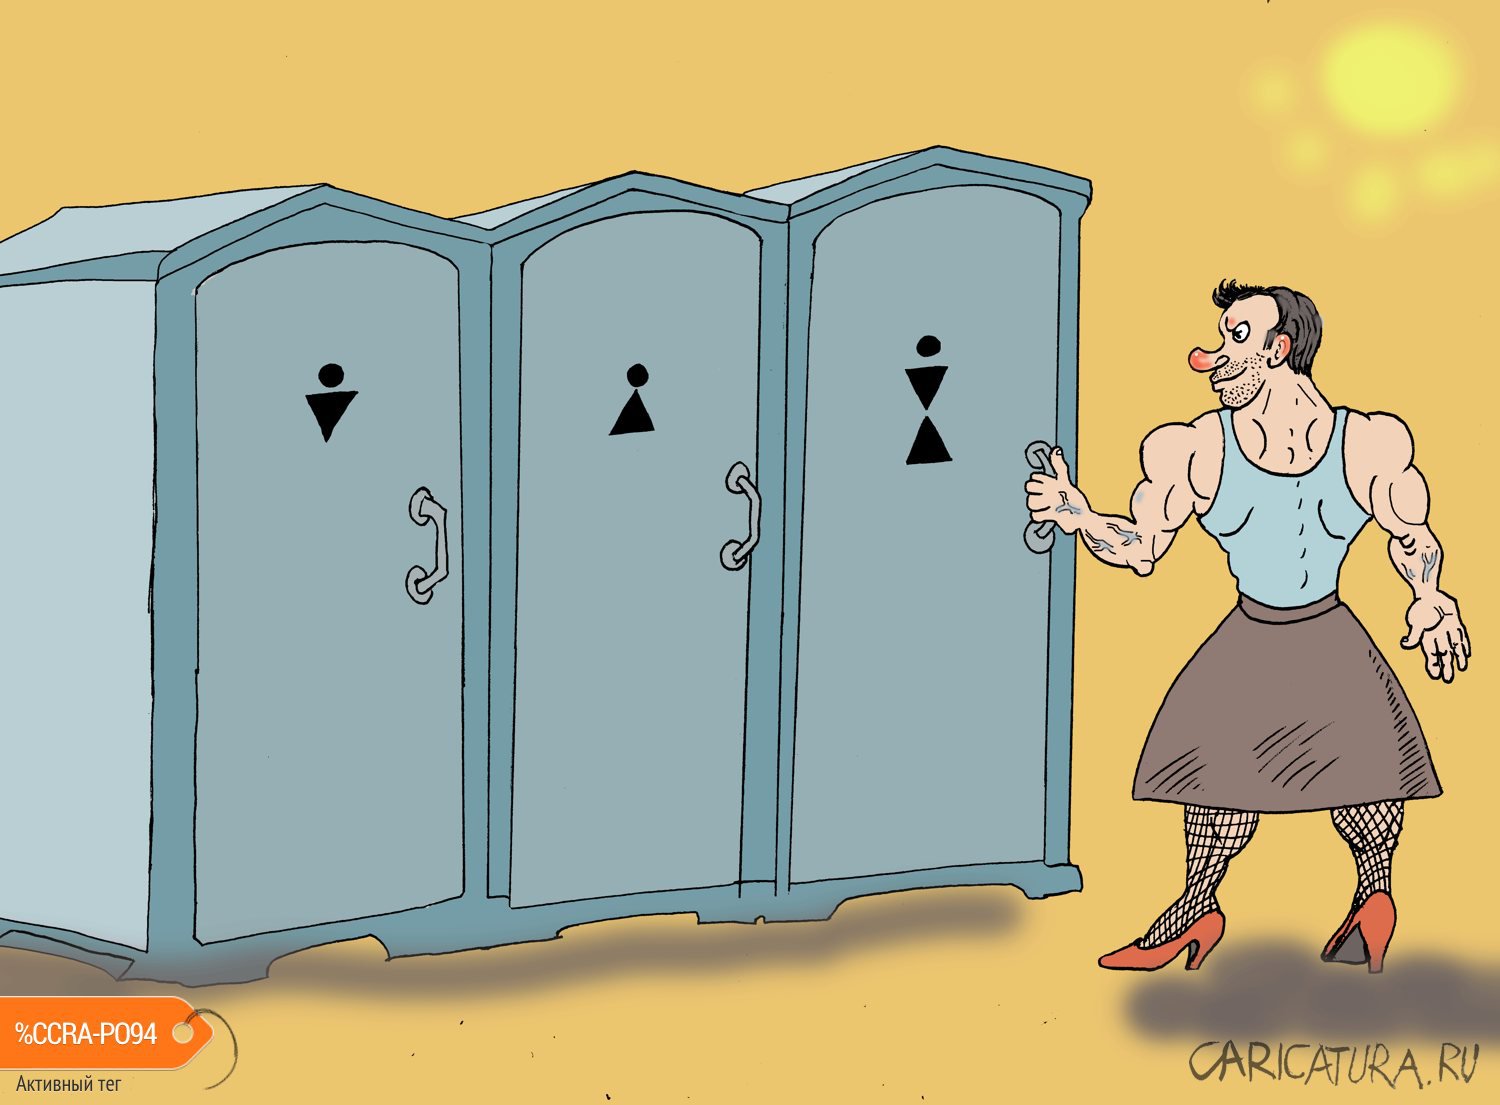 Карикатура "Туалет", Булат Ирсаев